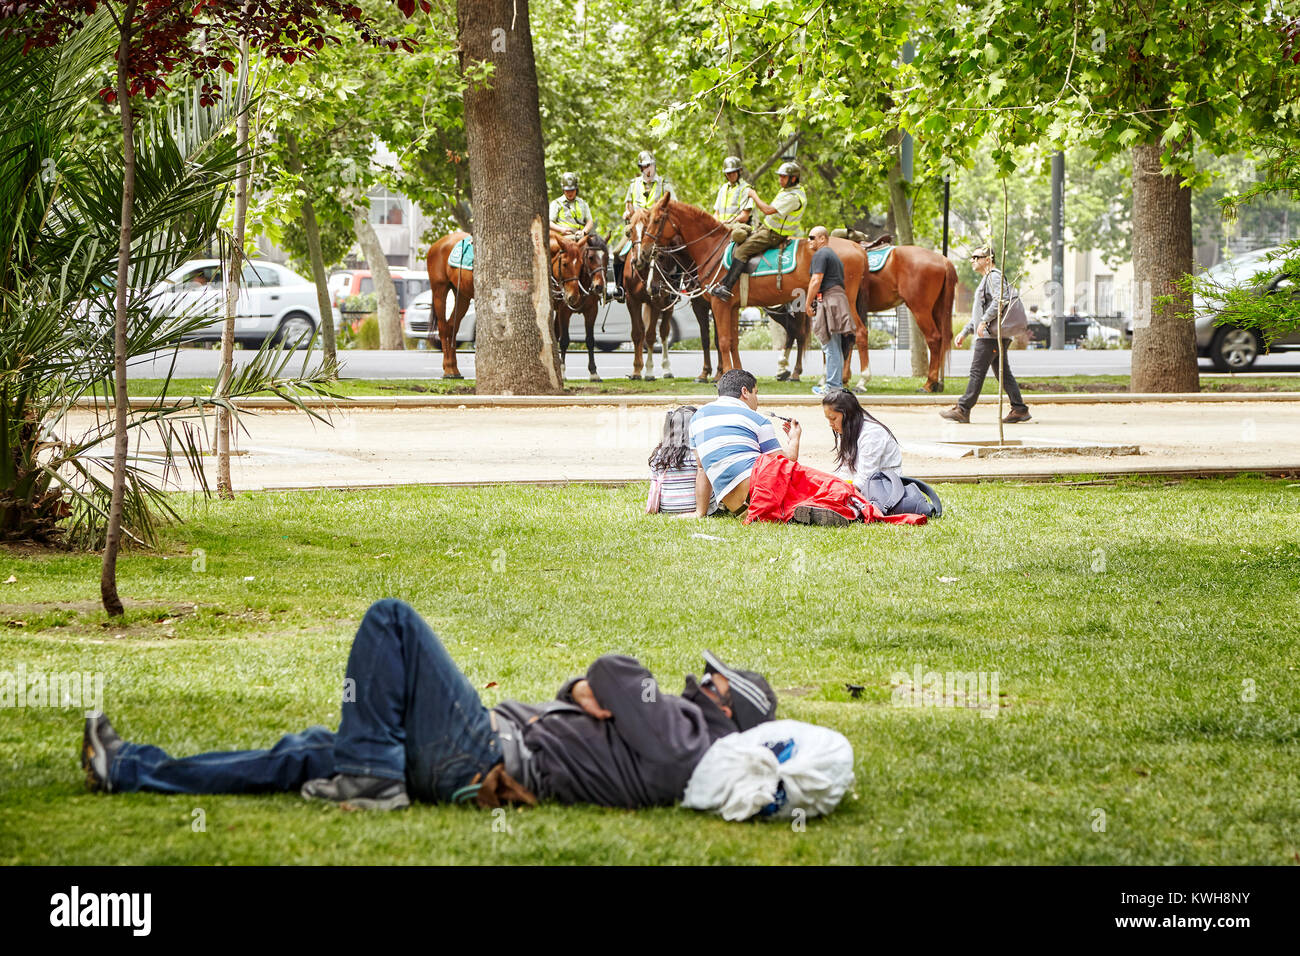 Santiago de Chile, Chili - 24 octobre 2013 : Les gens reste dans un parc municipal avec canada dans une distance (Carabineros de Chile). Banque D'Images